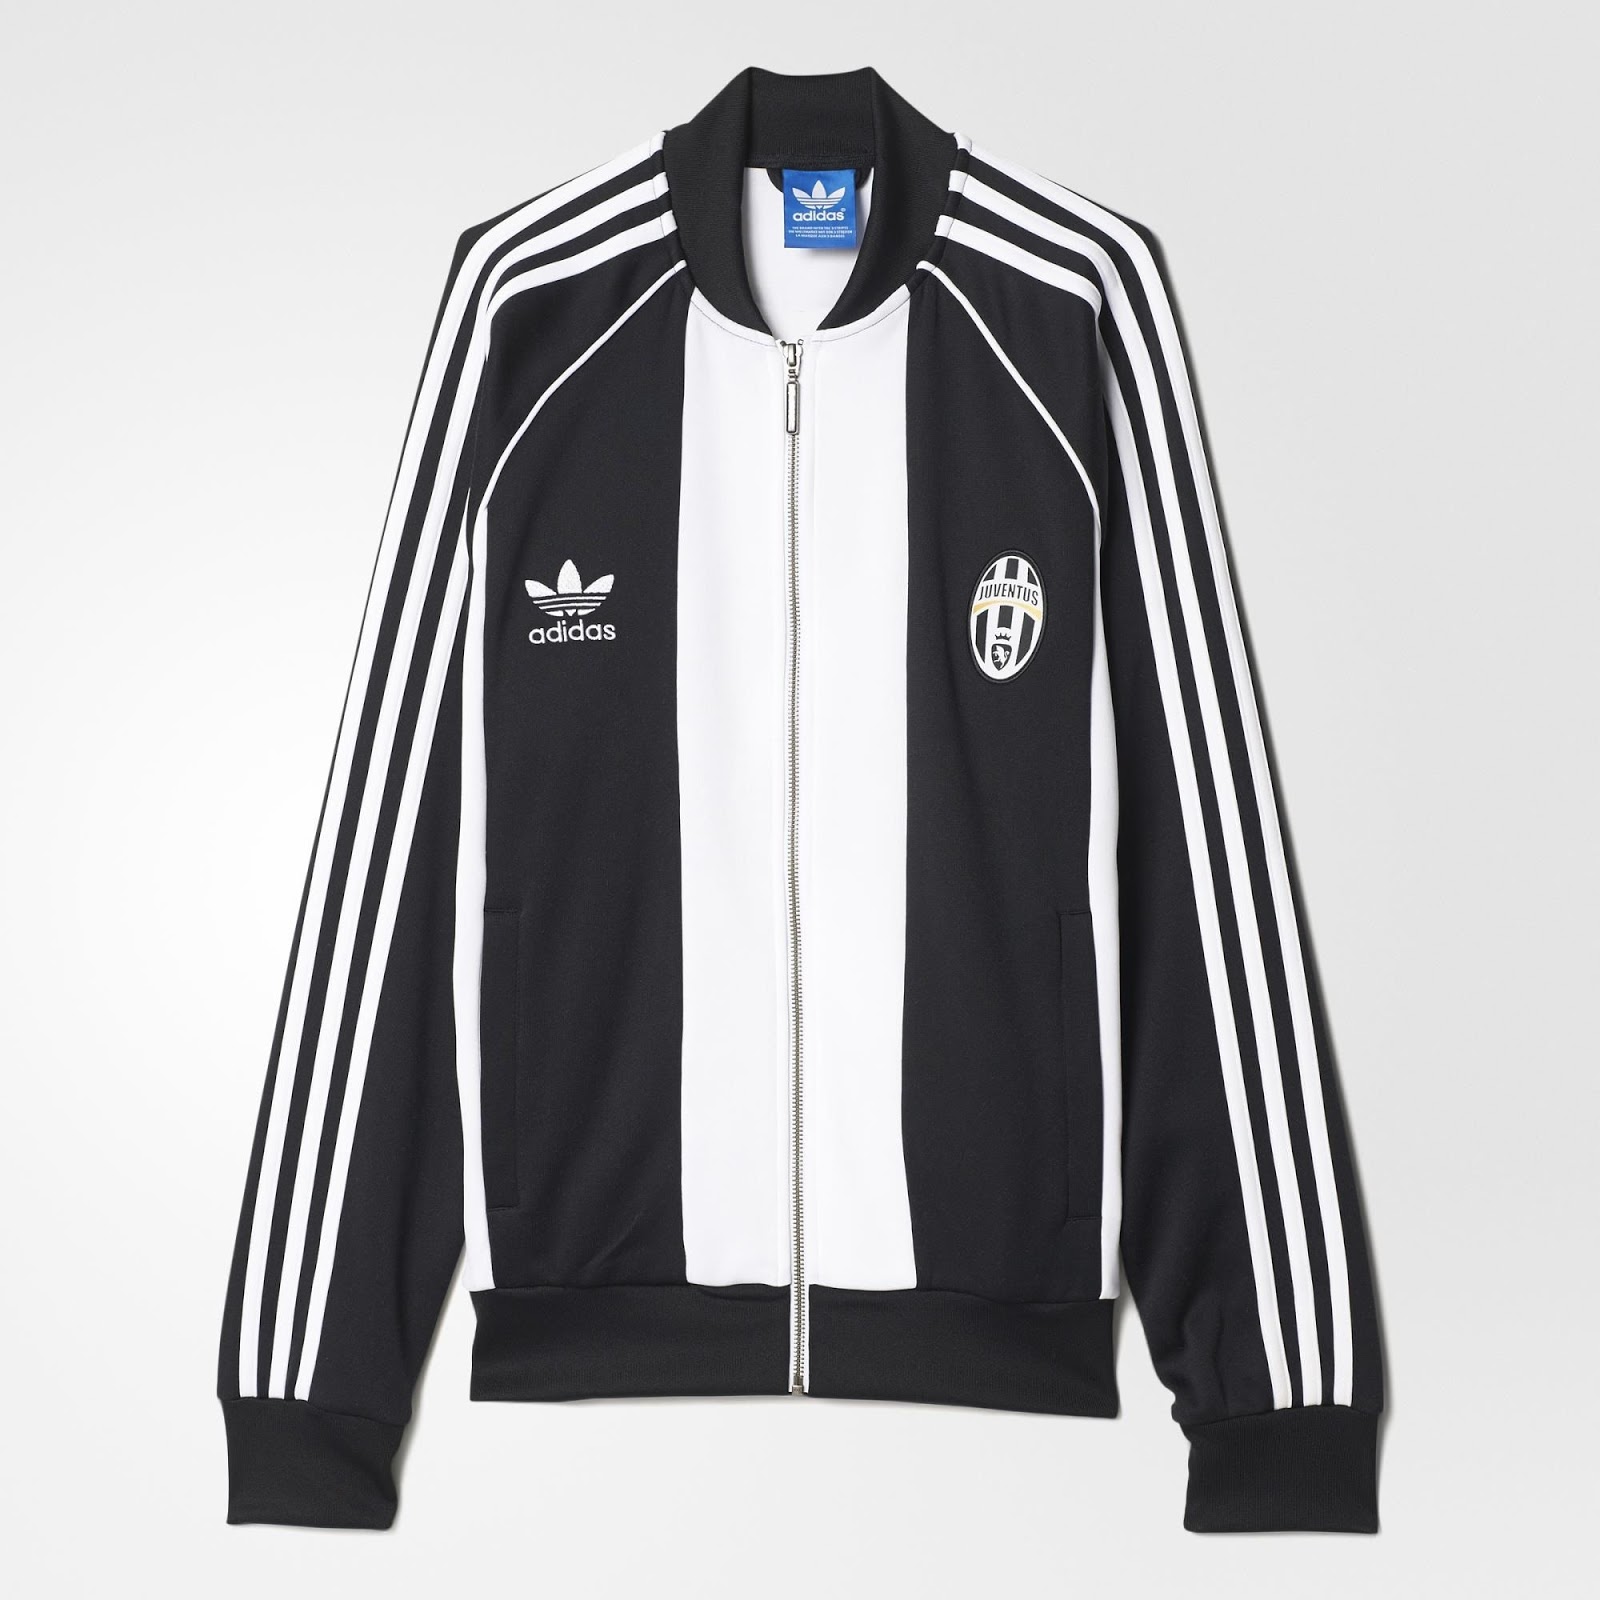 Adidas-Originals-Milan-Juventus%2B%25282